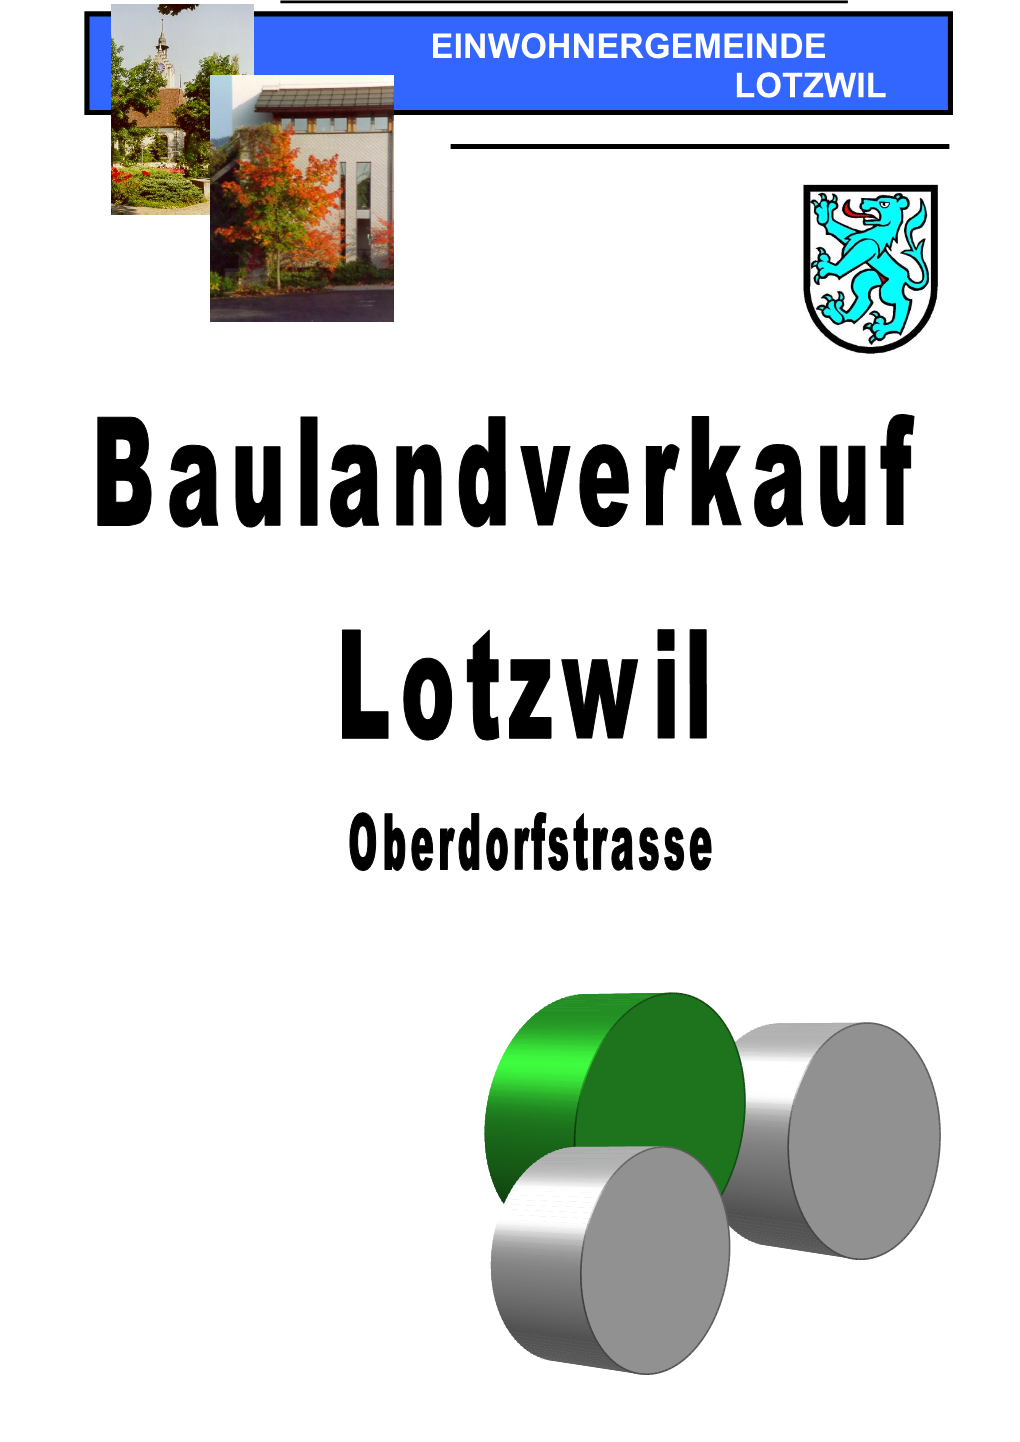 Einwohnergemeinde Lotzwil